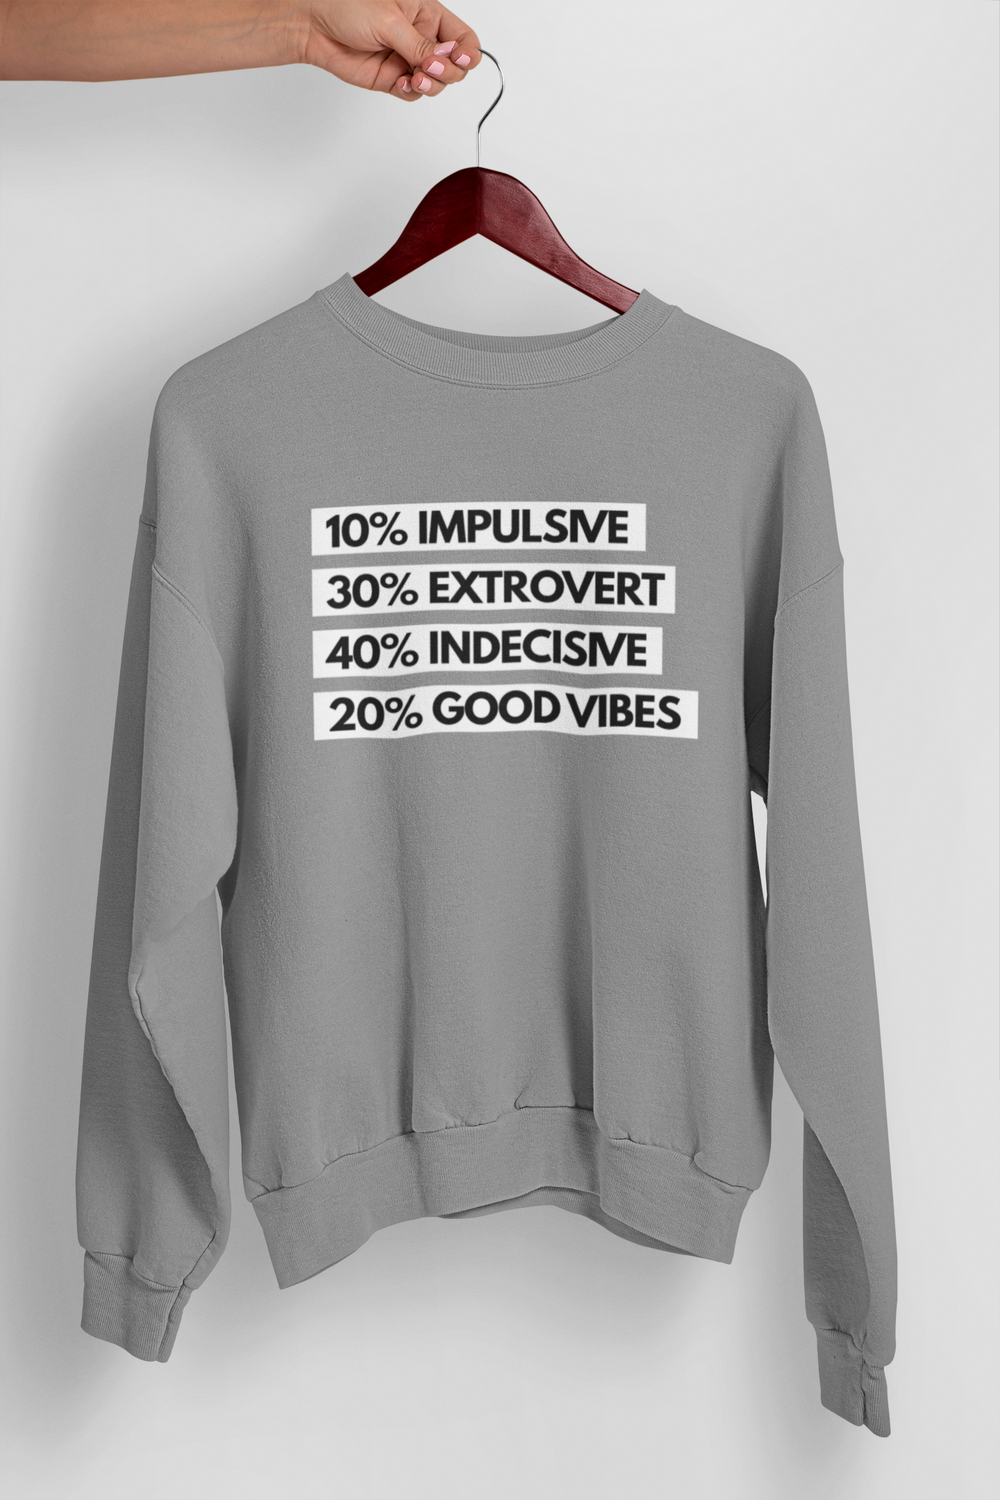 100% GEMINI Sweater - TalkPeng